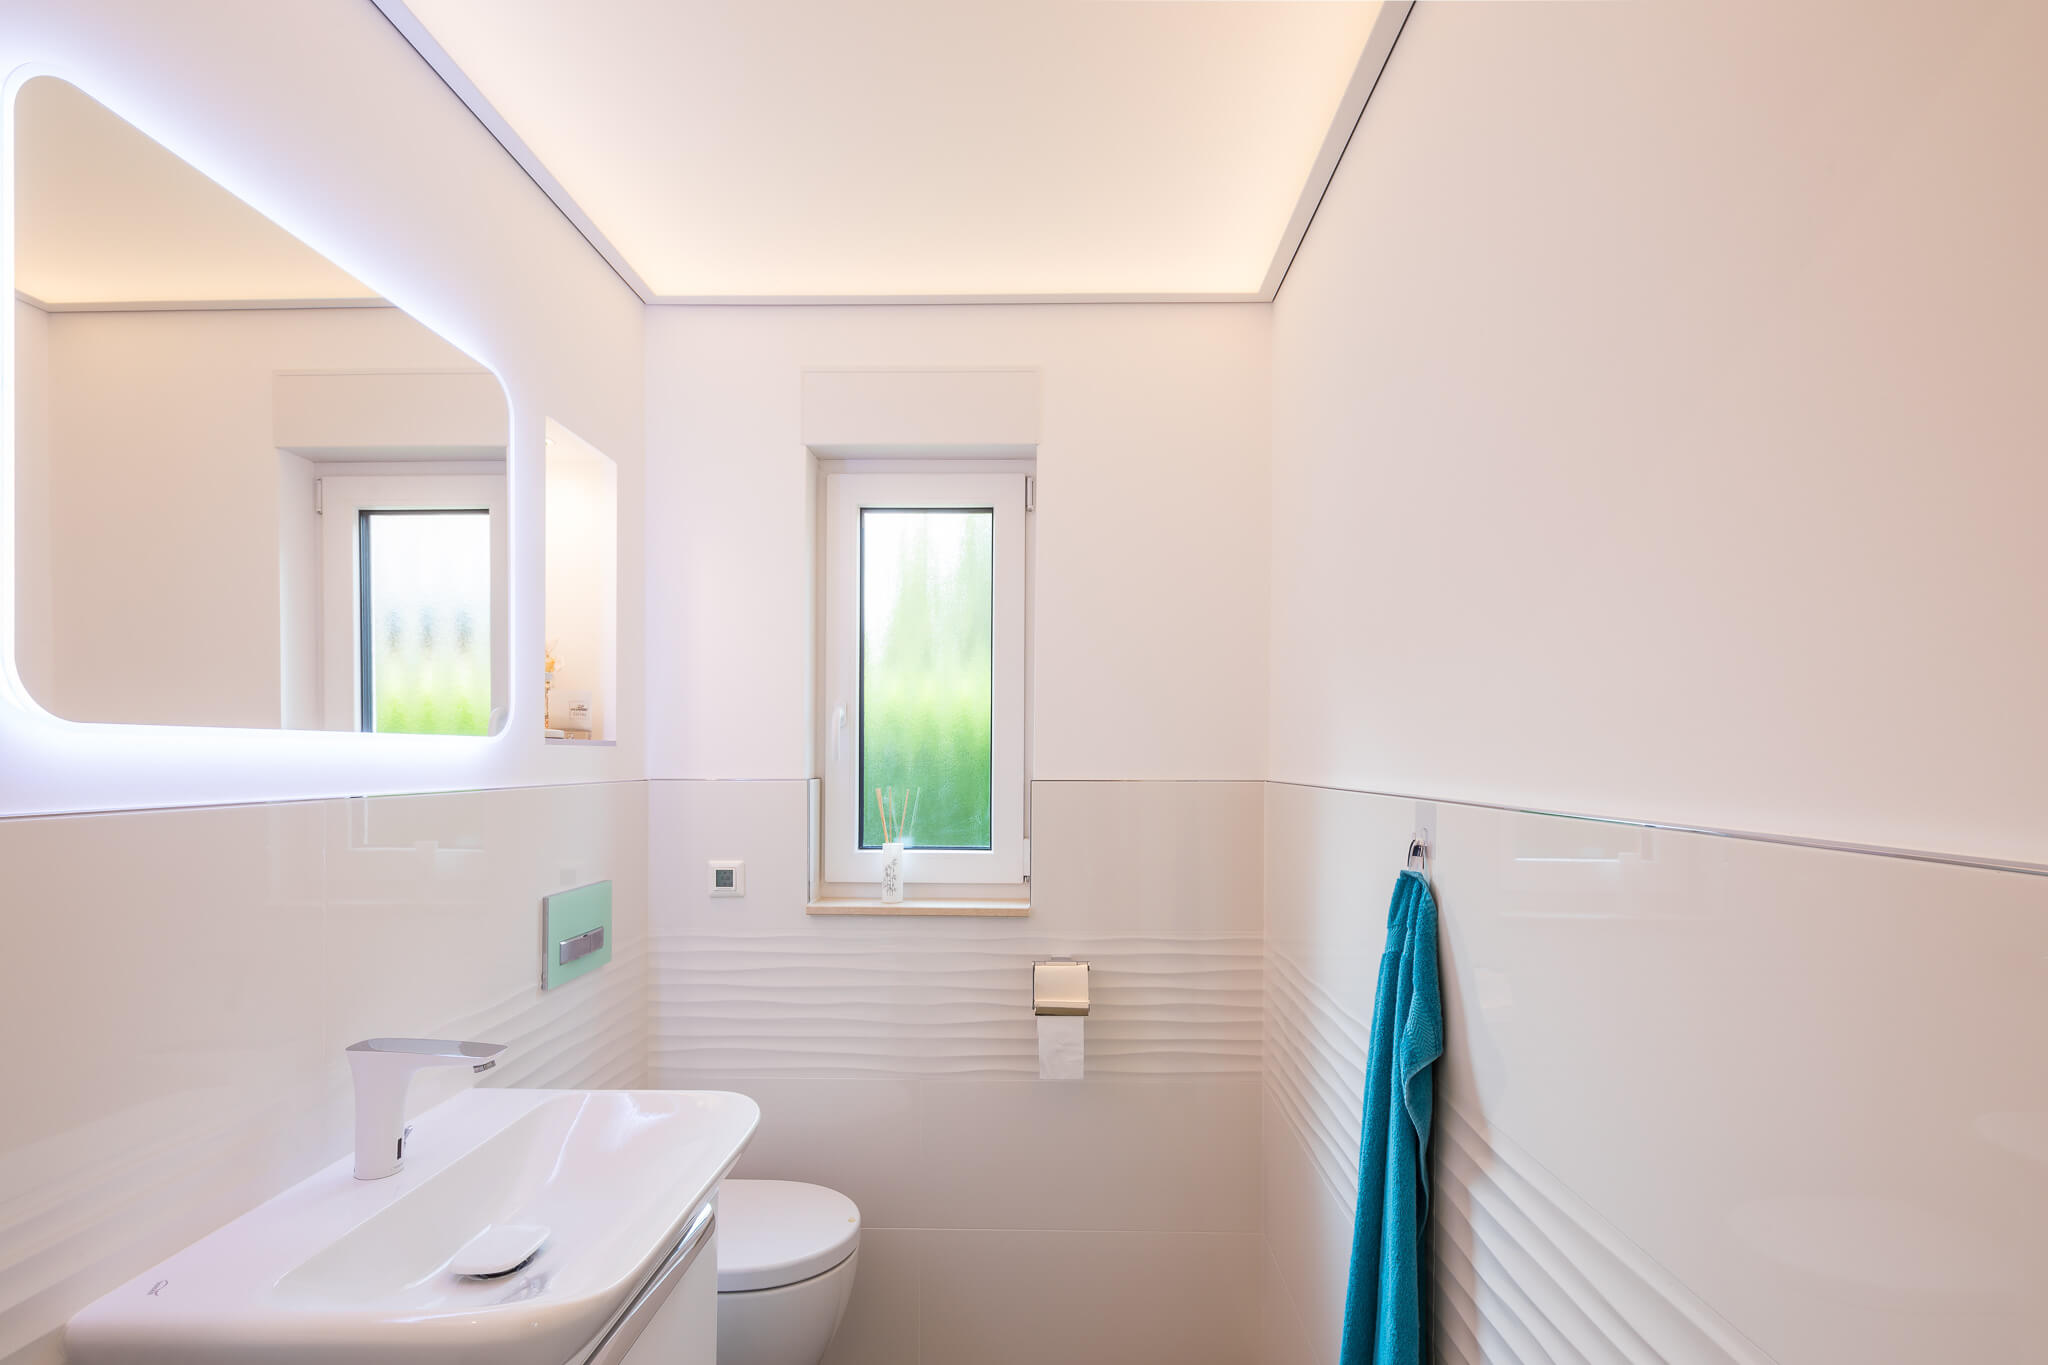 Plameco spanplafond: lichtplafond in de badkamer